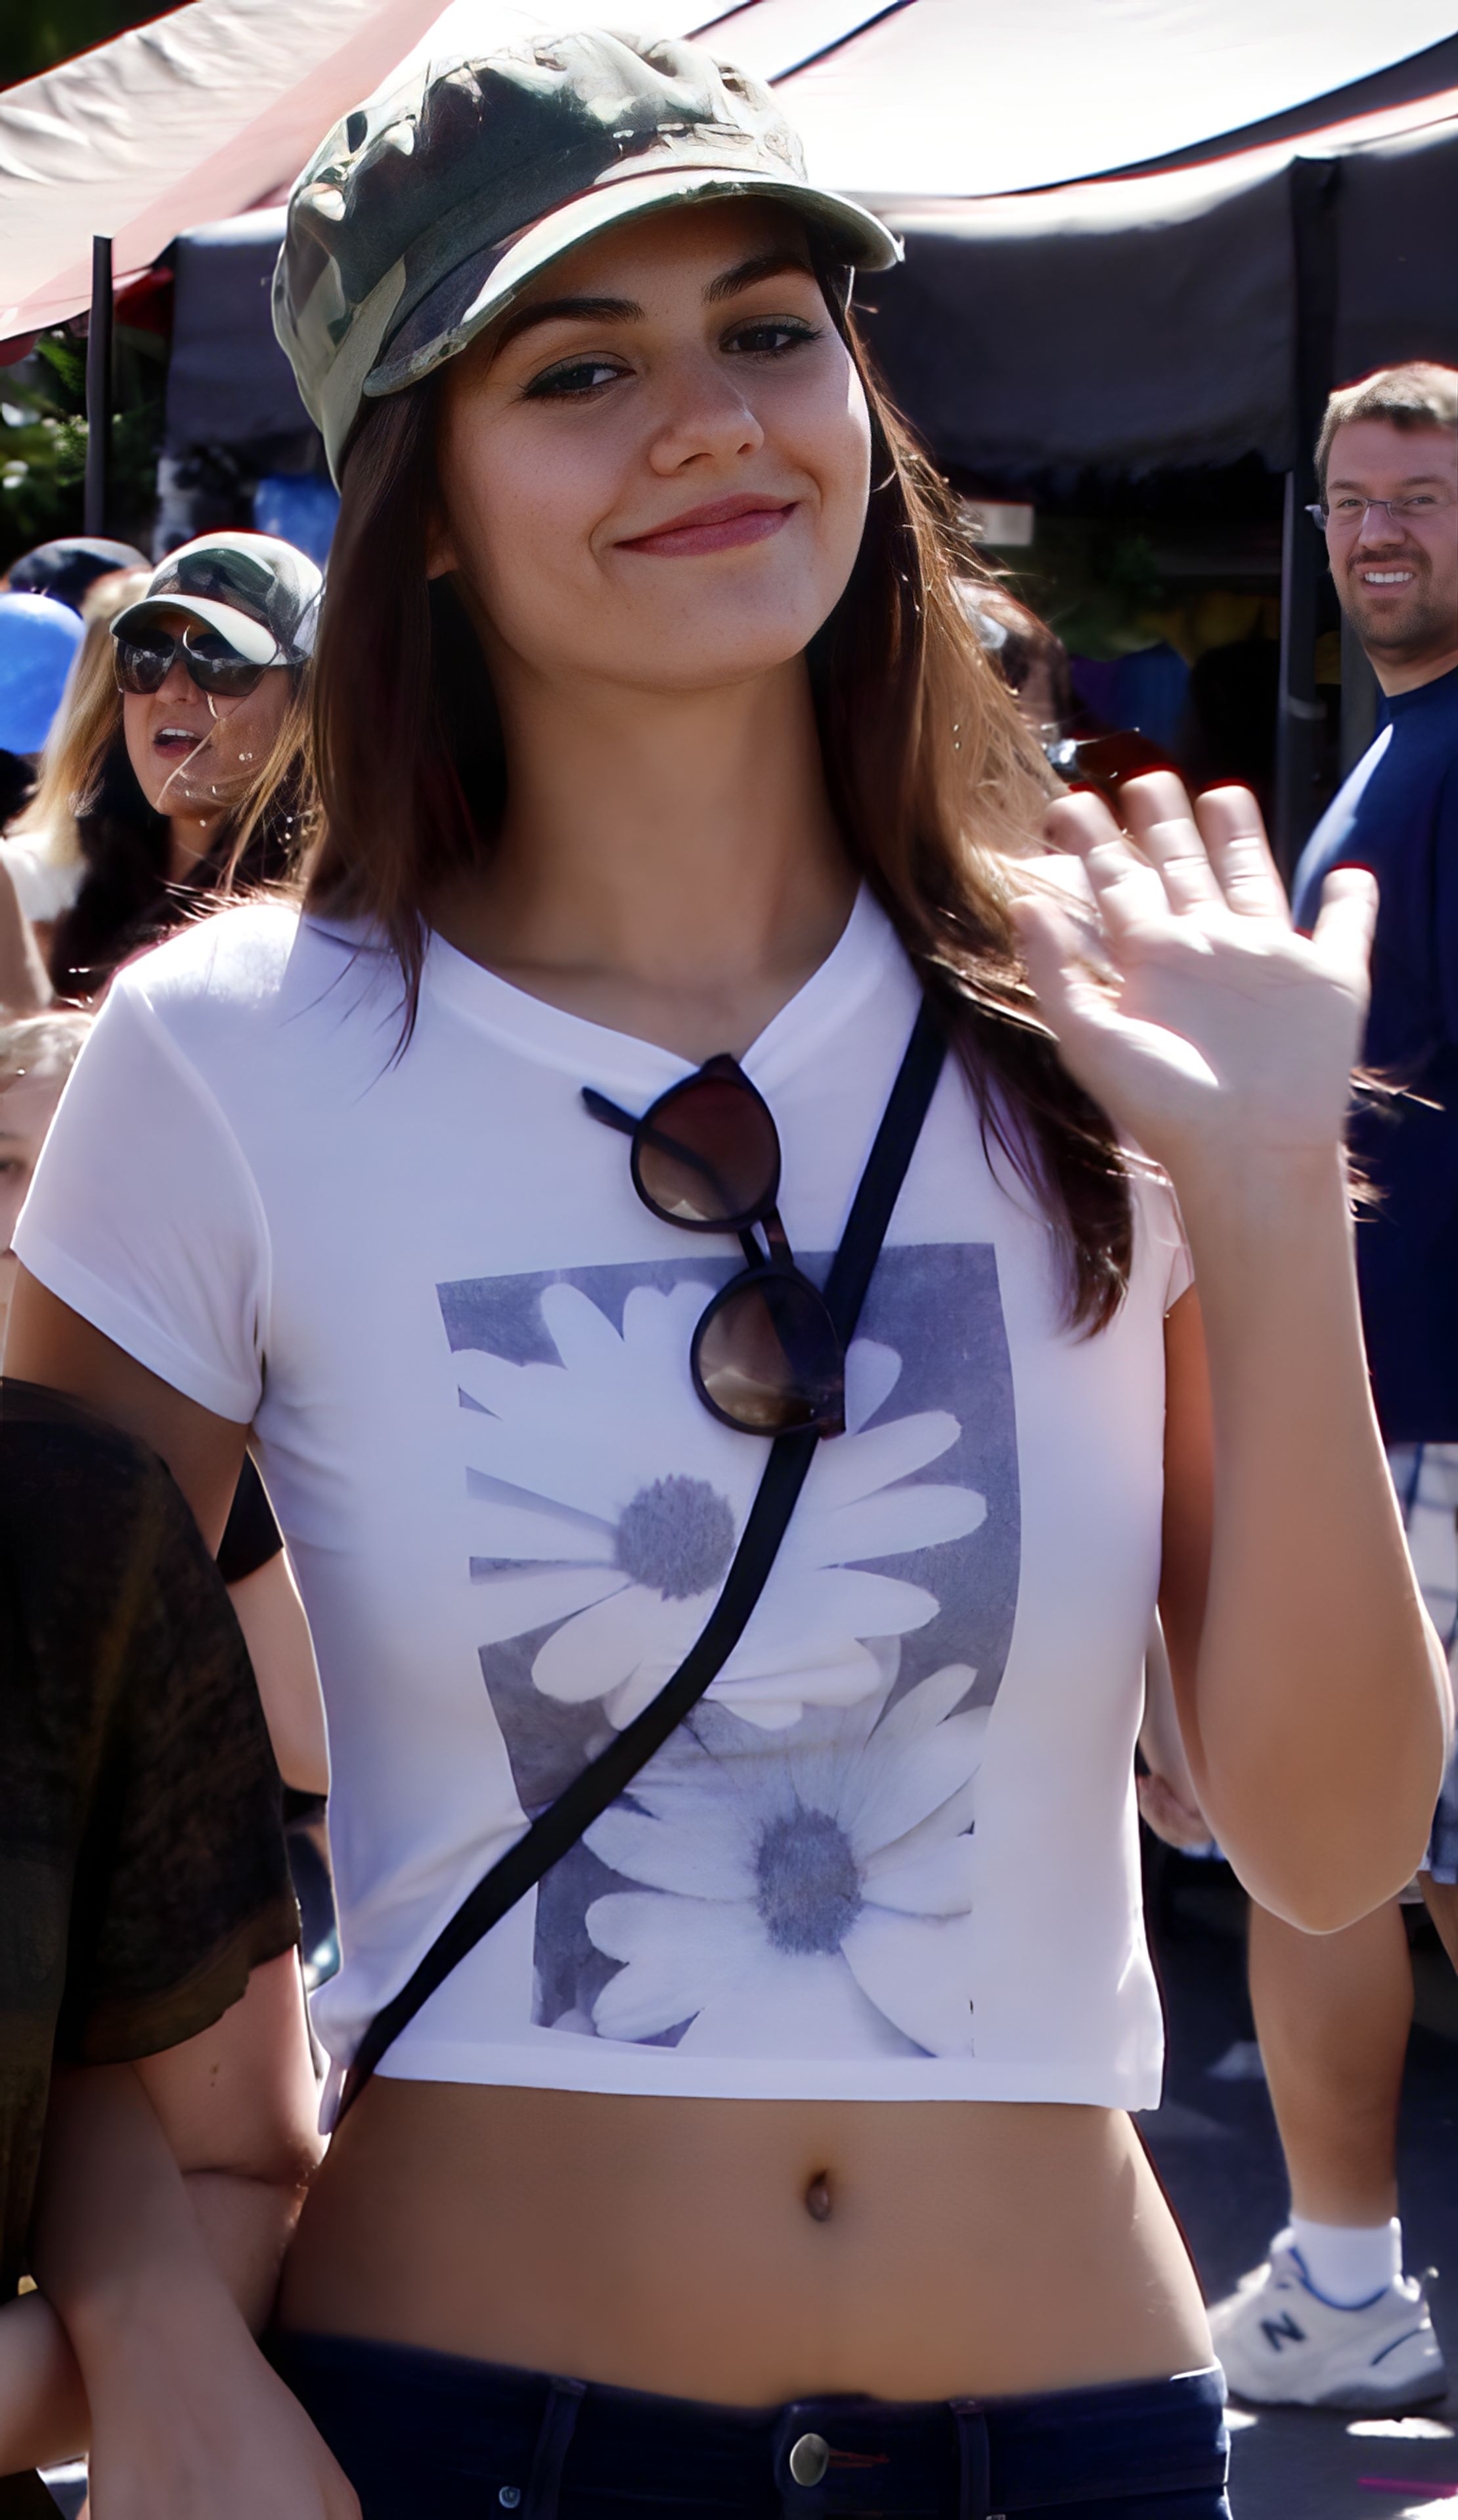 Victoria Justice - Wikipedia